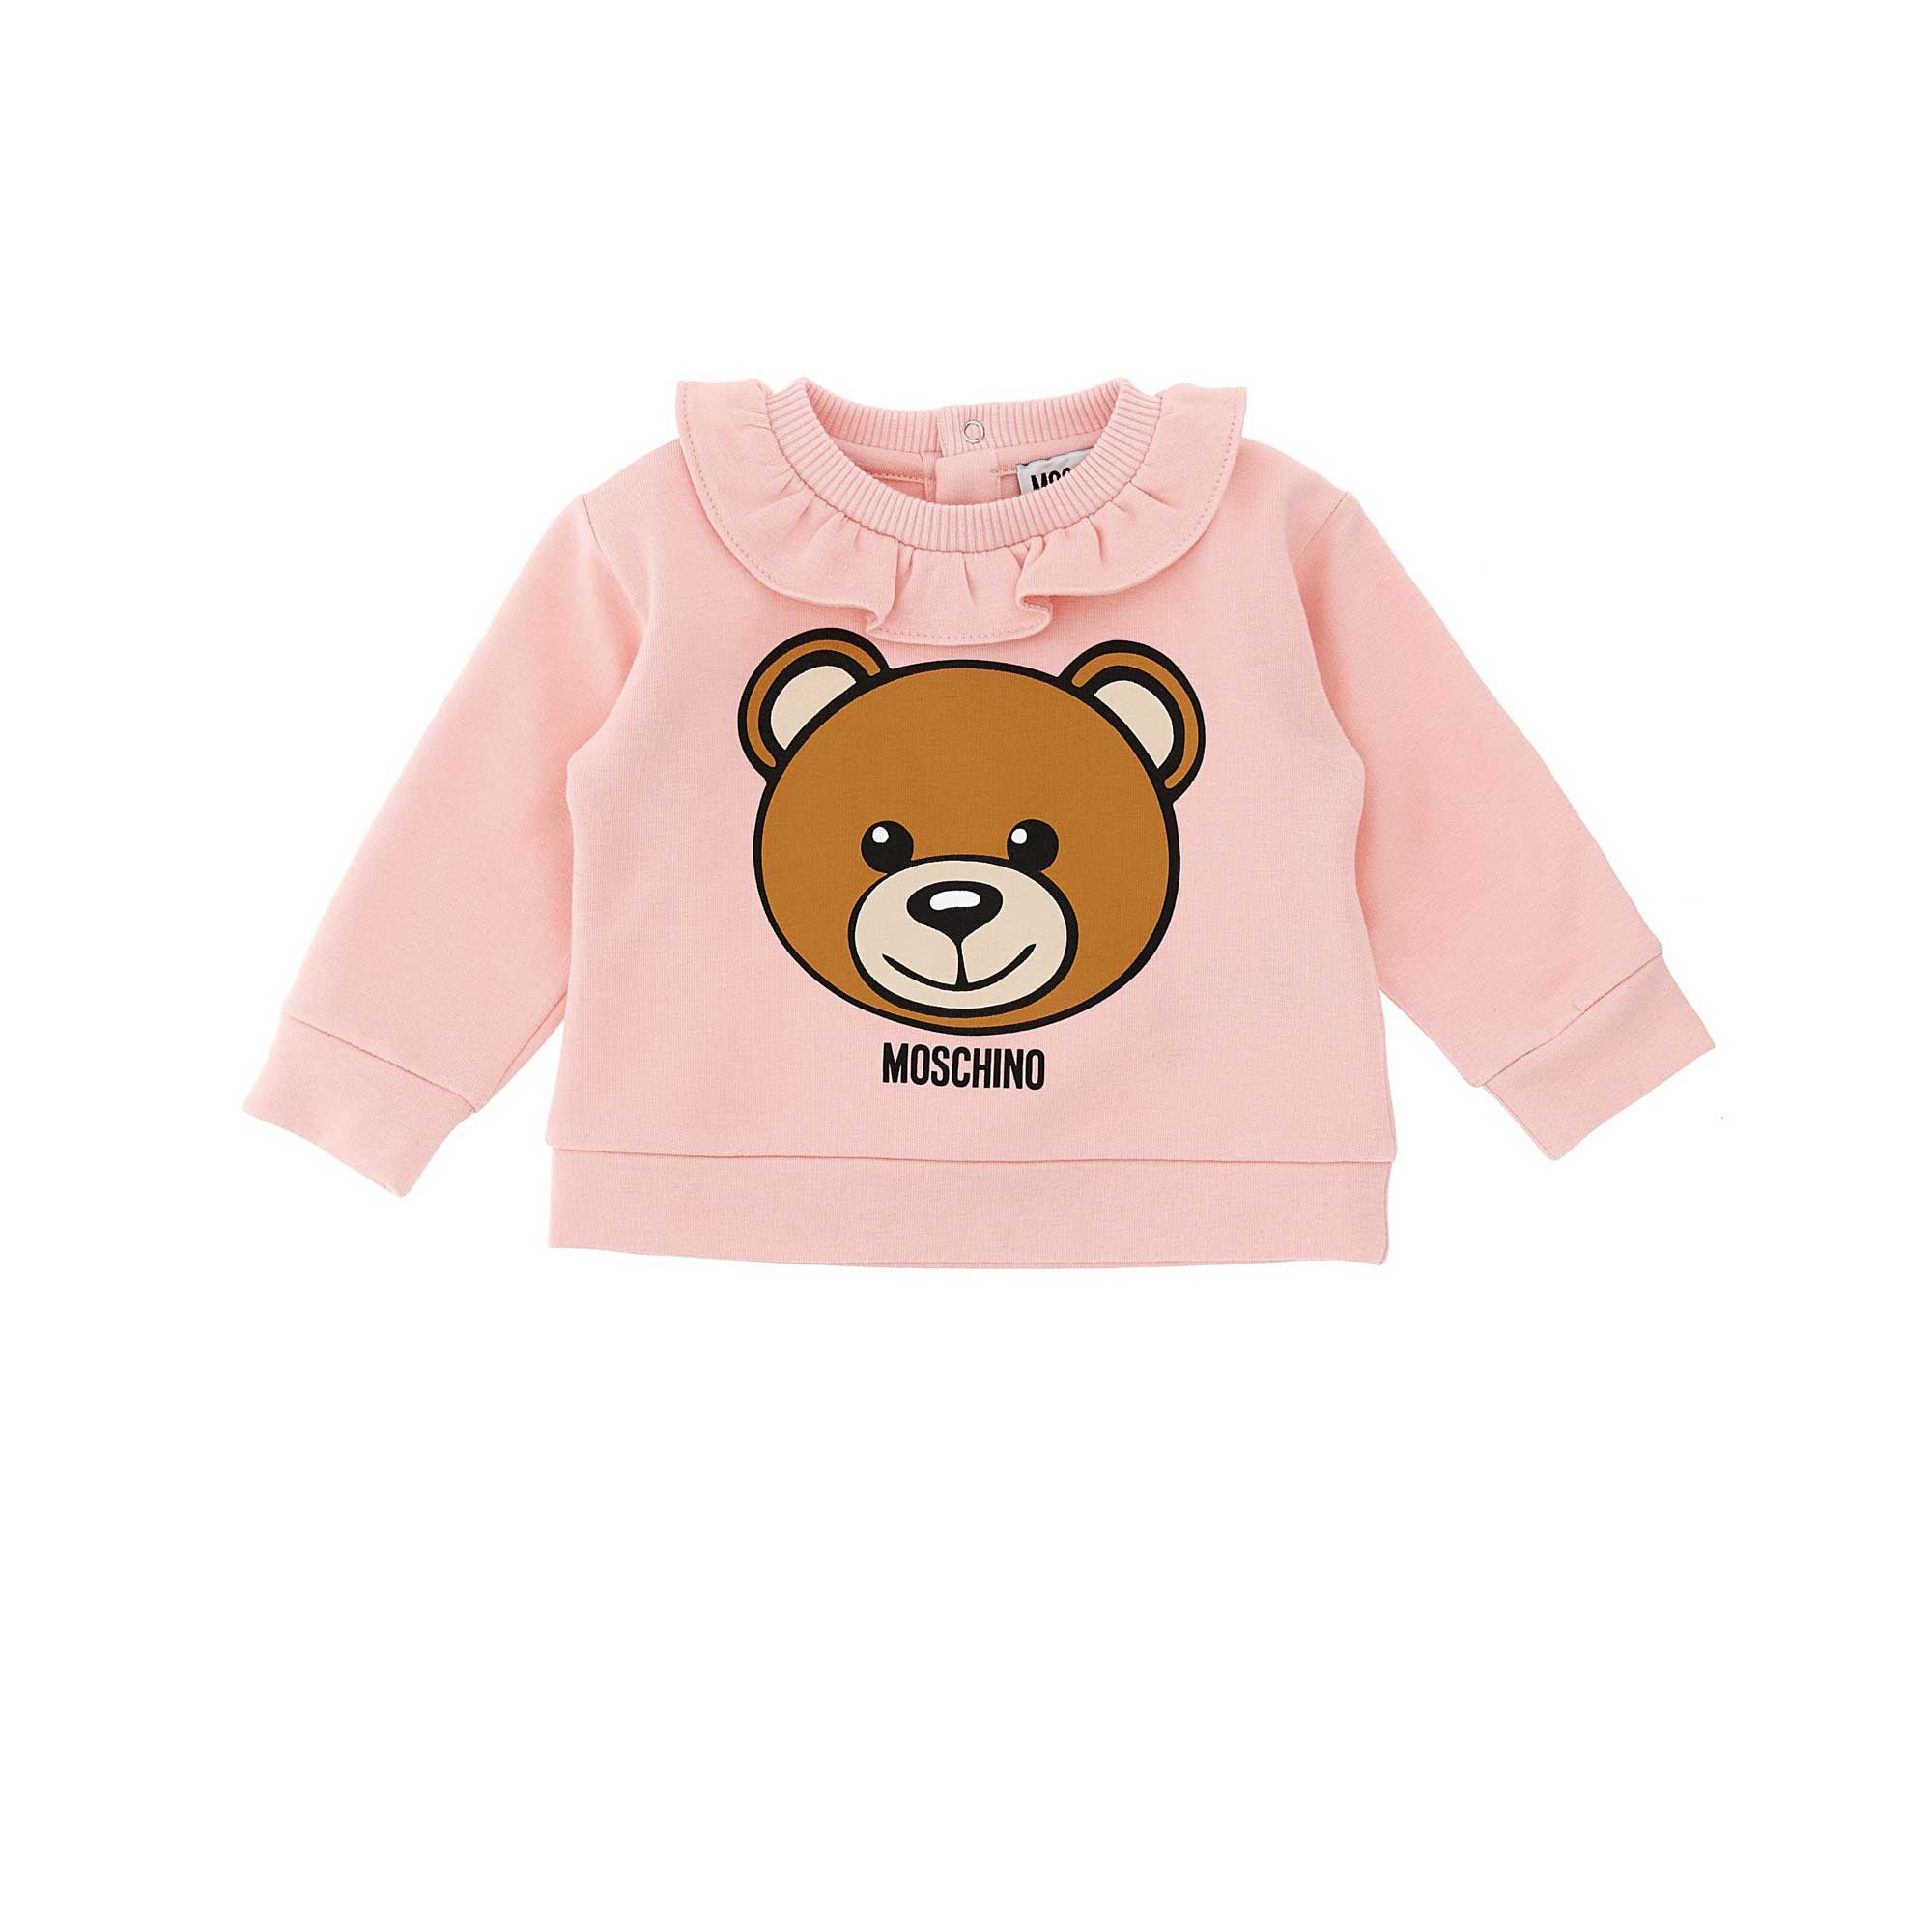 Baby Girls Pink Ruffle Cotton Sweatshirt